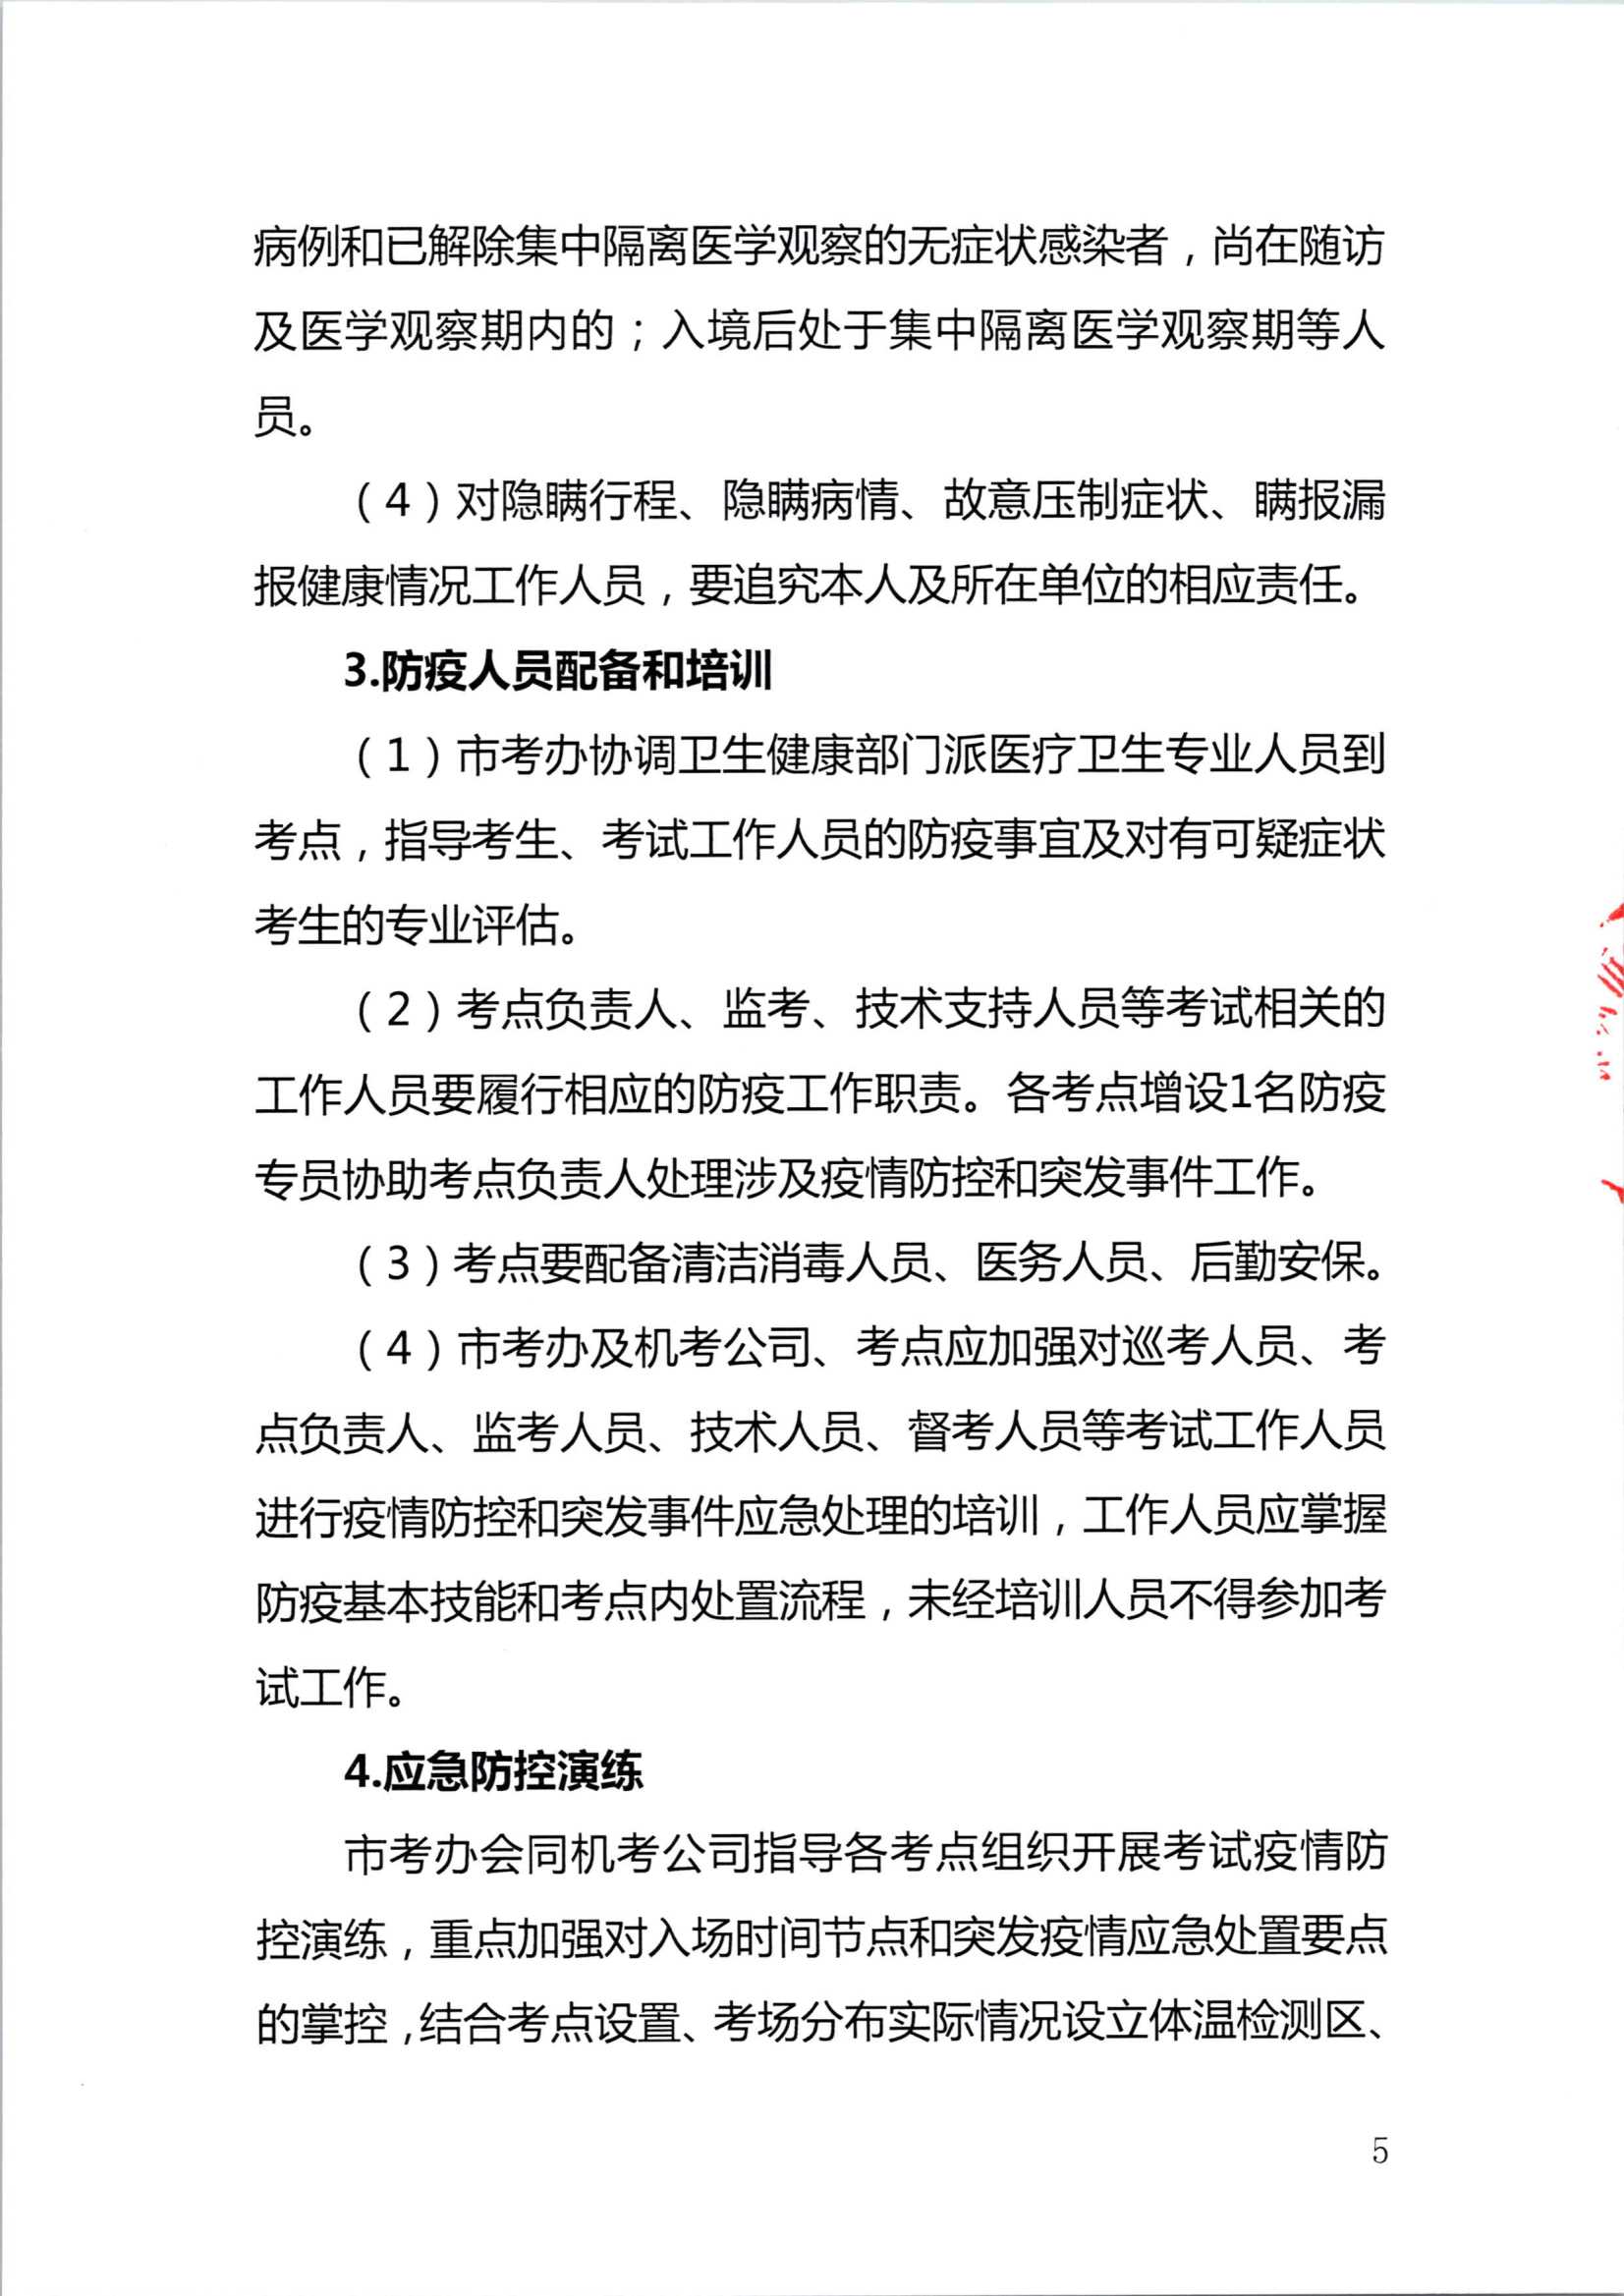 2020注册会计师全国统一考试深圳考区疫情防控工作方案_5.Png